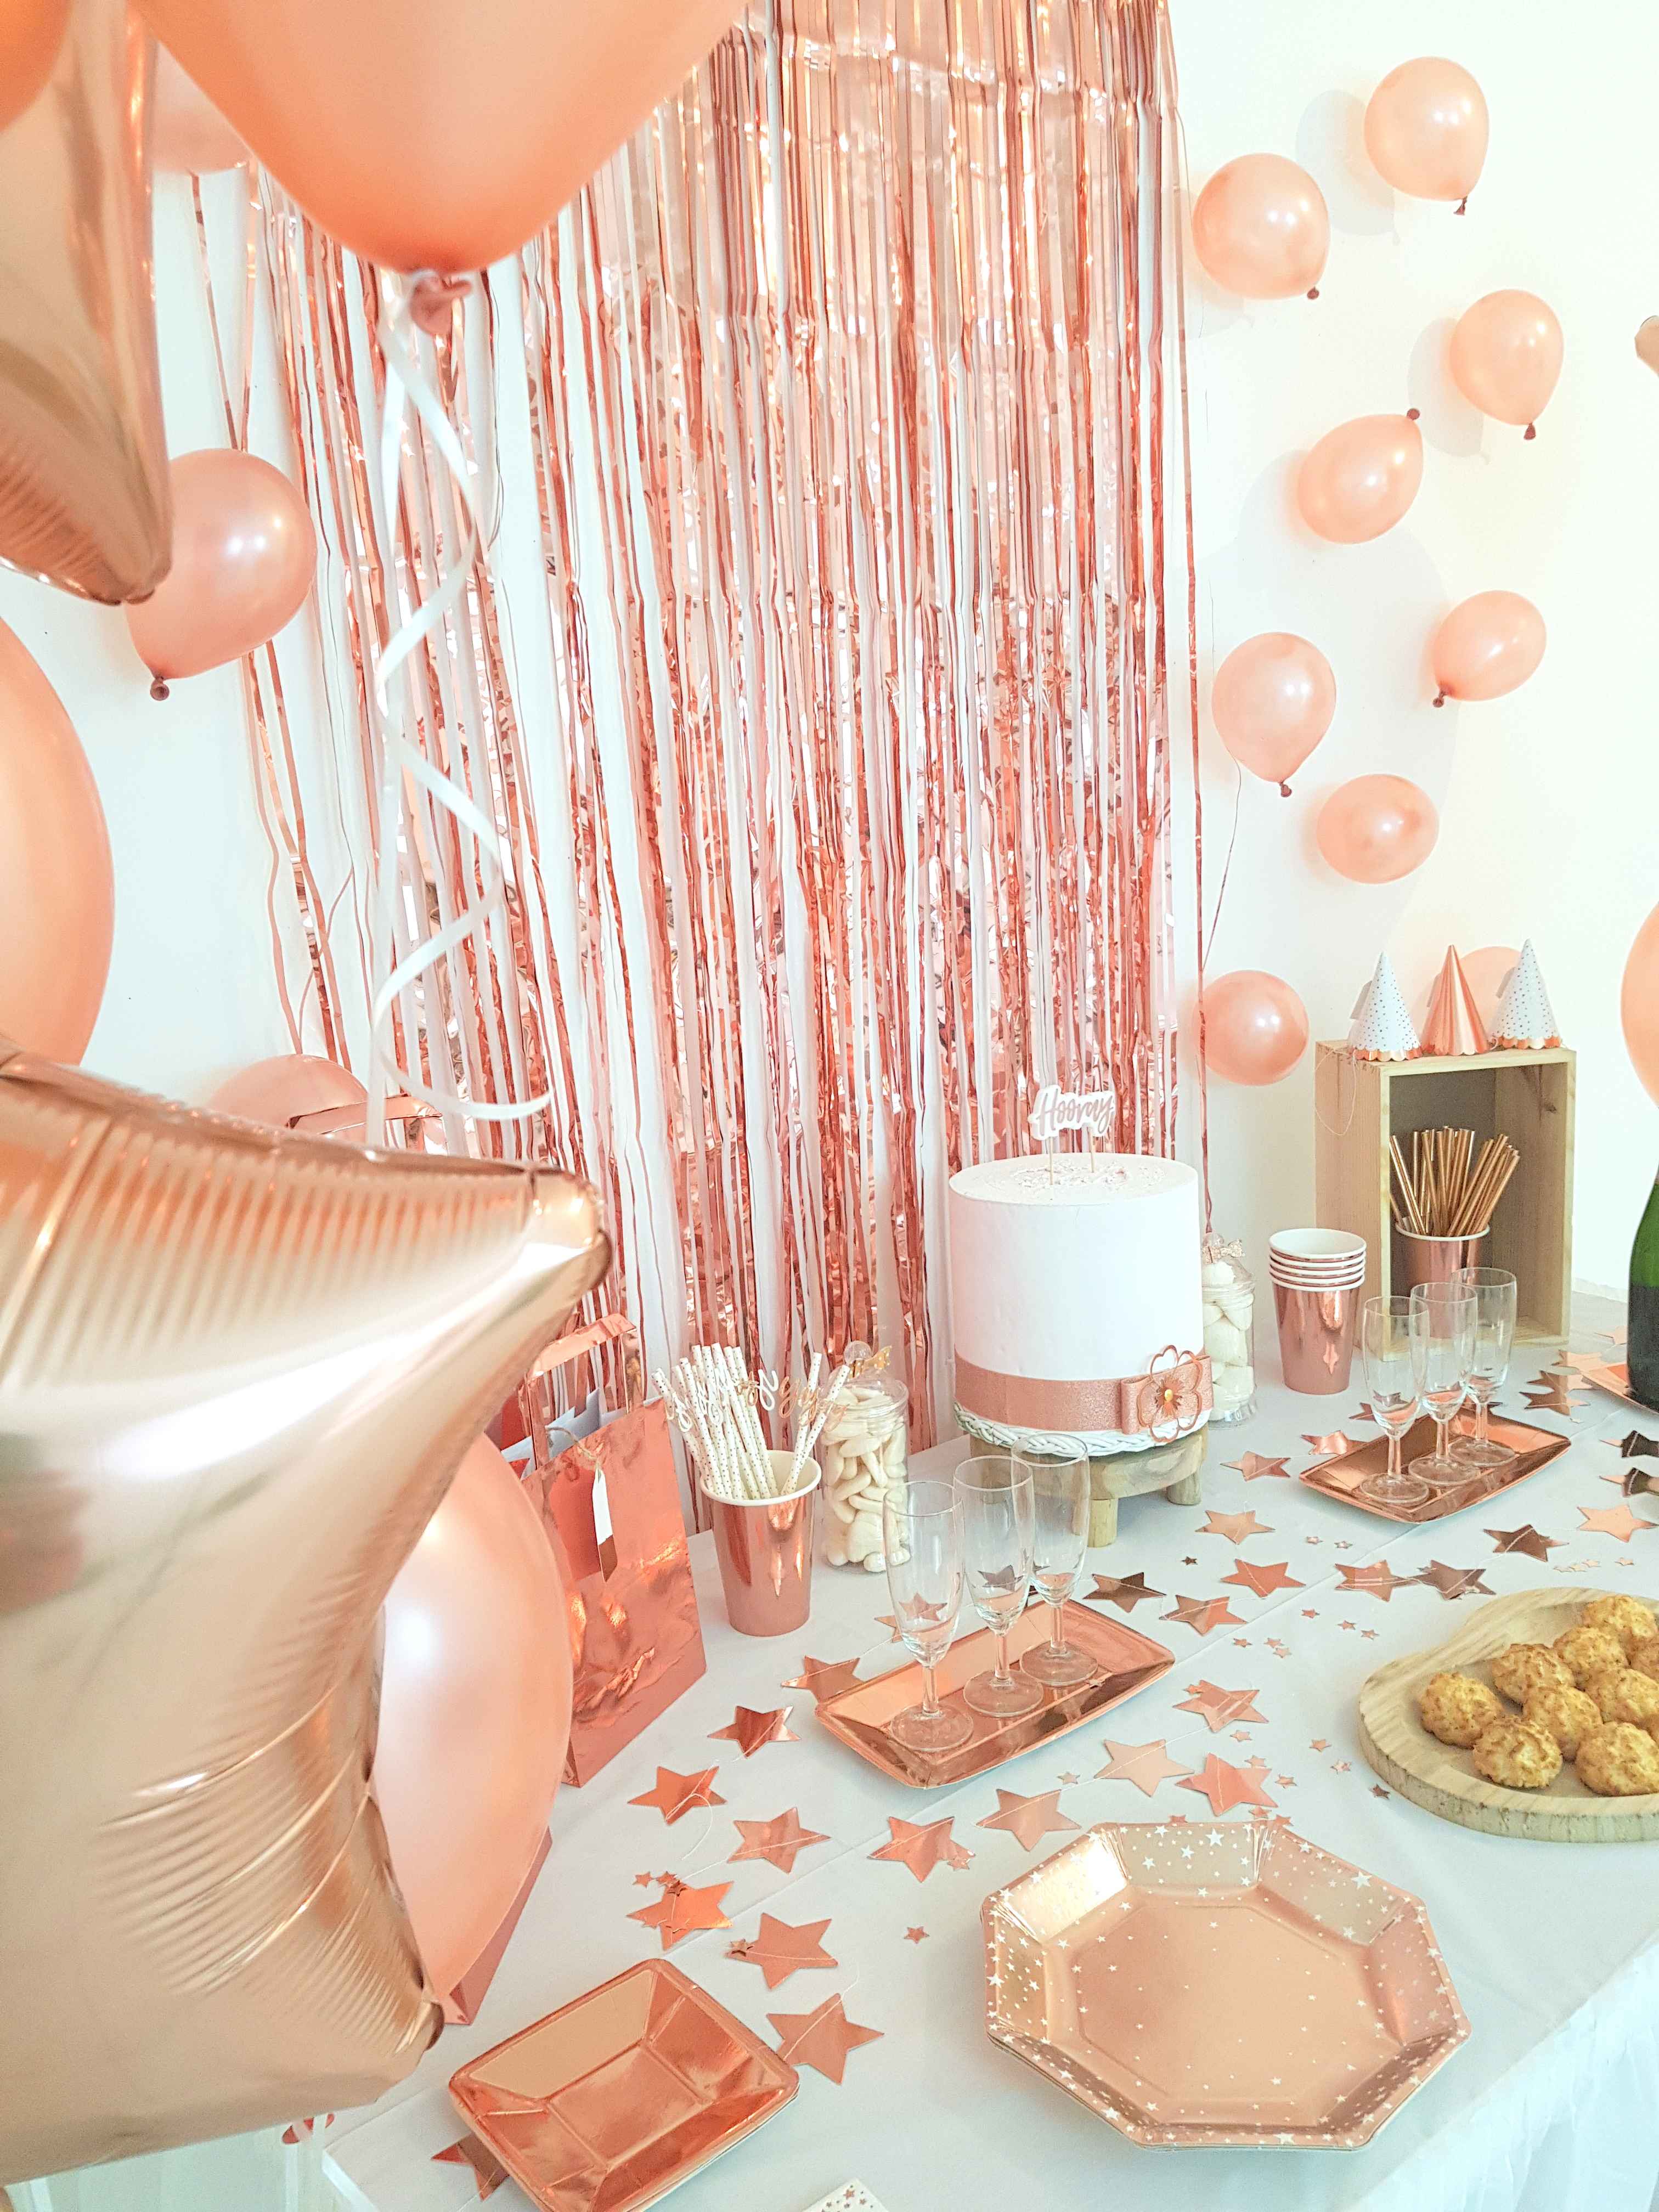 décoration sweet table rose gold nouvel an 2019 jour de l'an noël